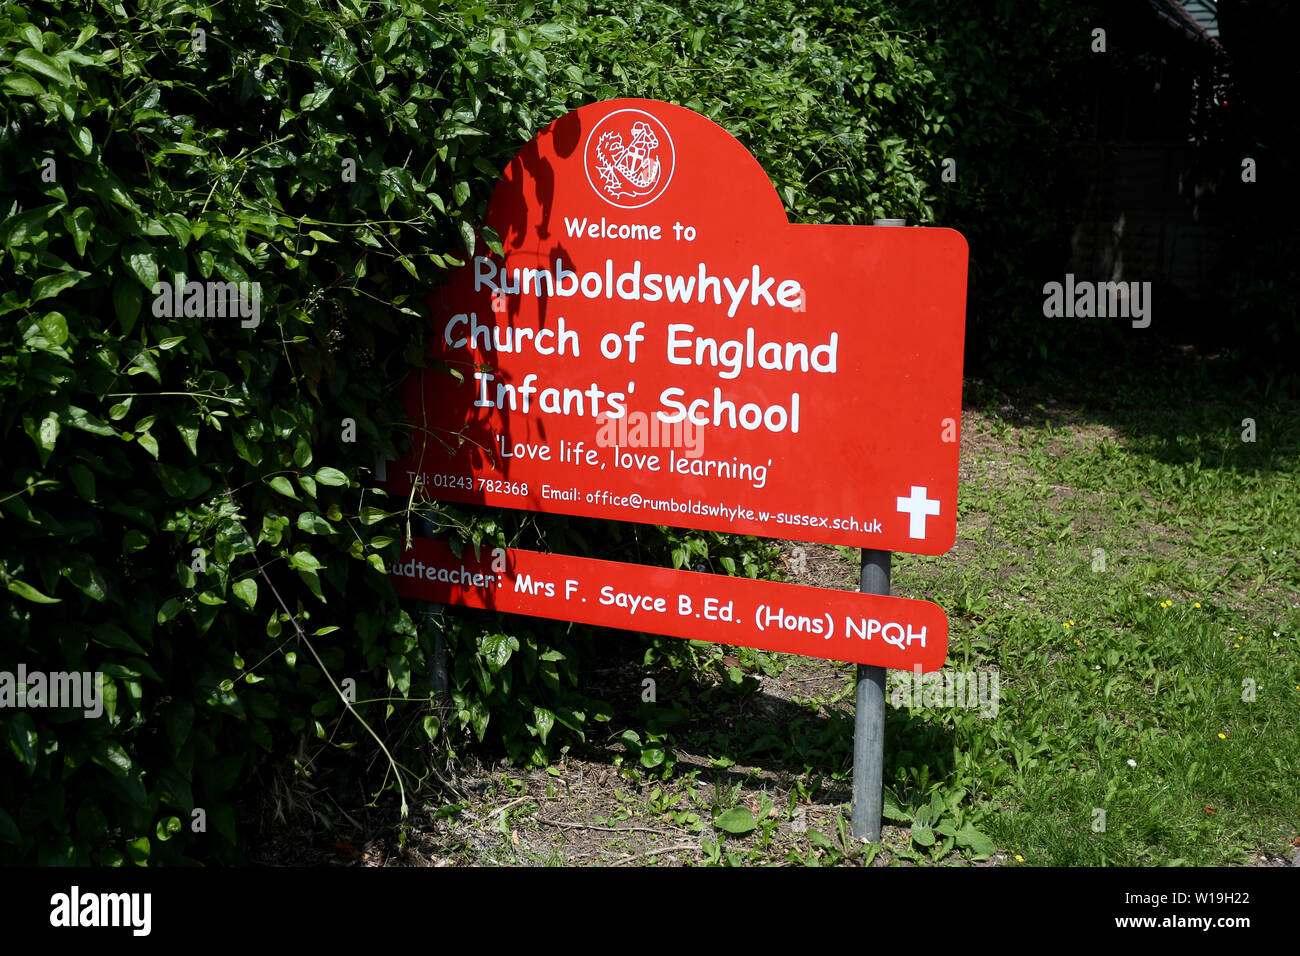 Vedute generali della Rumboldswhyke Church of England Infant School a Chichester, West Sussex, Regno Unito. La scuola dovrebbe essere chiusa dopo i tagli del consiglio. Foto Stock